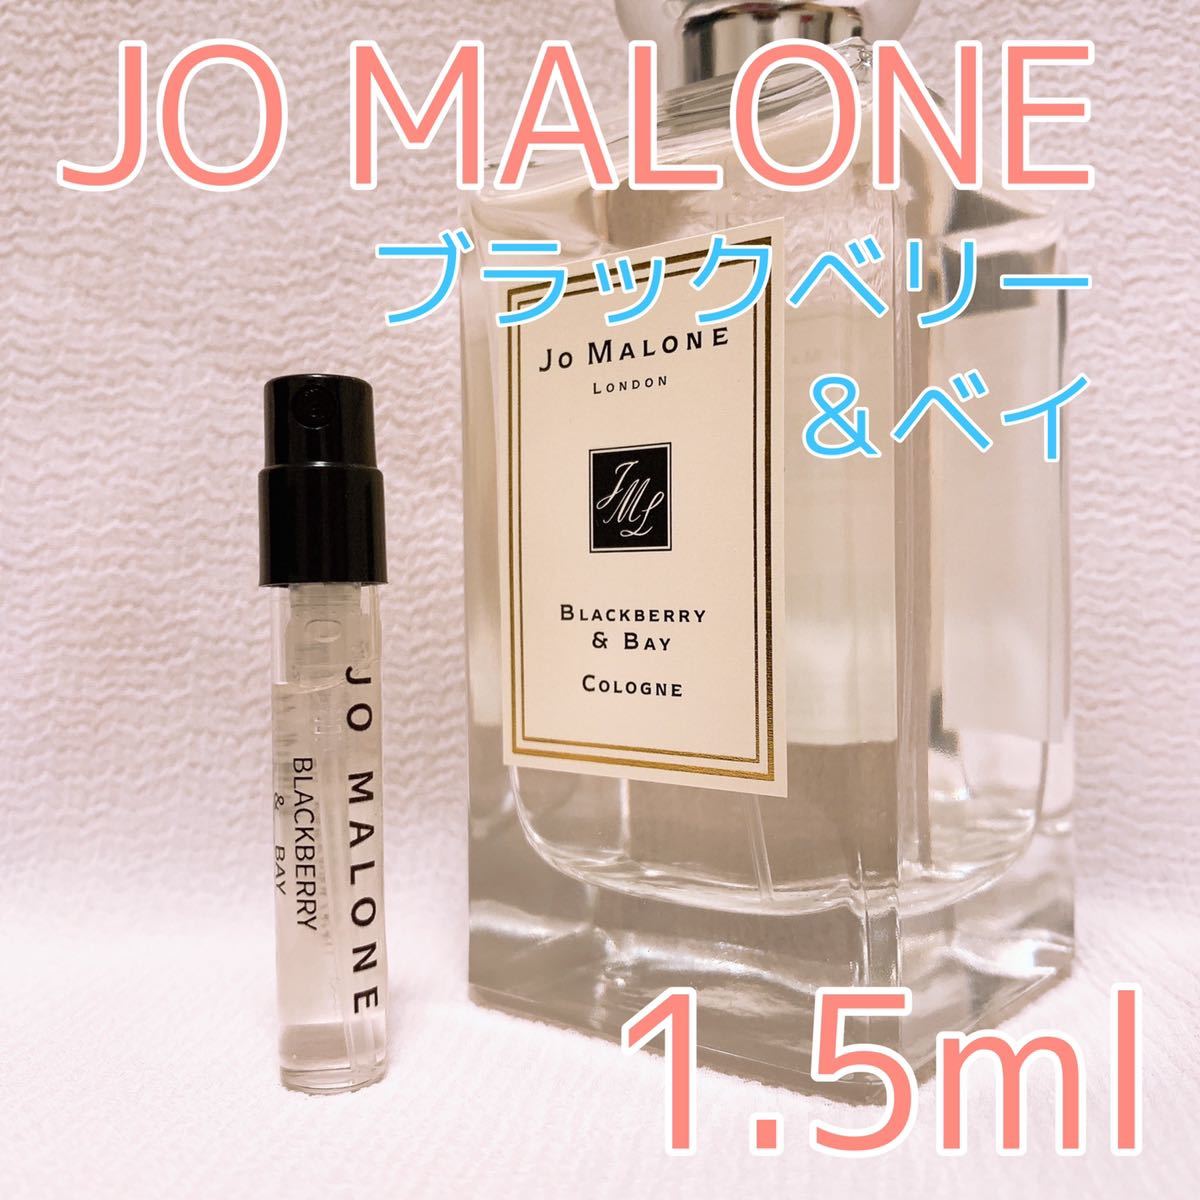 ジョーマローン 人気 香水 お試し 3本セット 各1.5mL イングリッシュペアー レッドローズ ブラックベリー JoMalone 選ぶなら